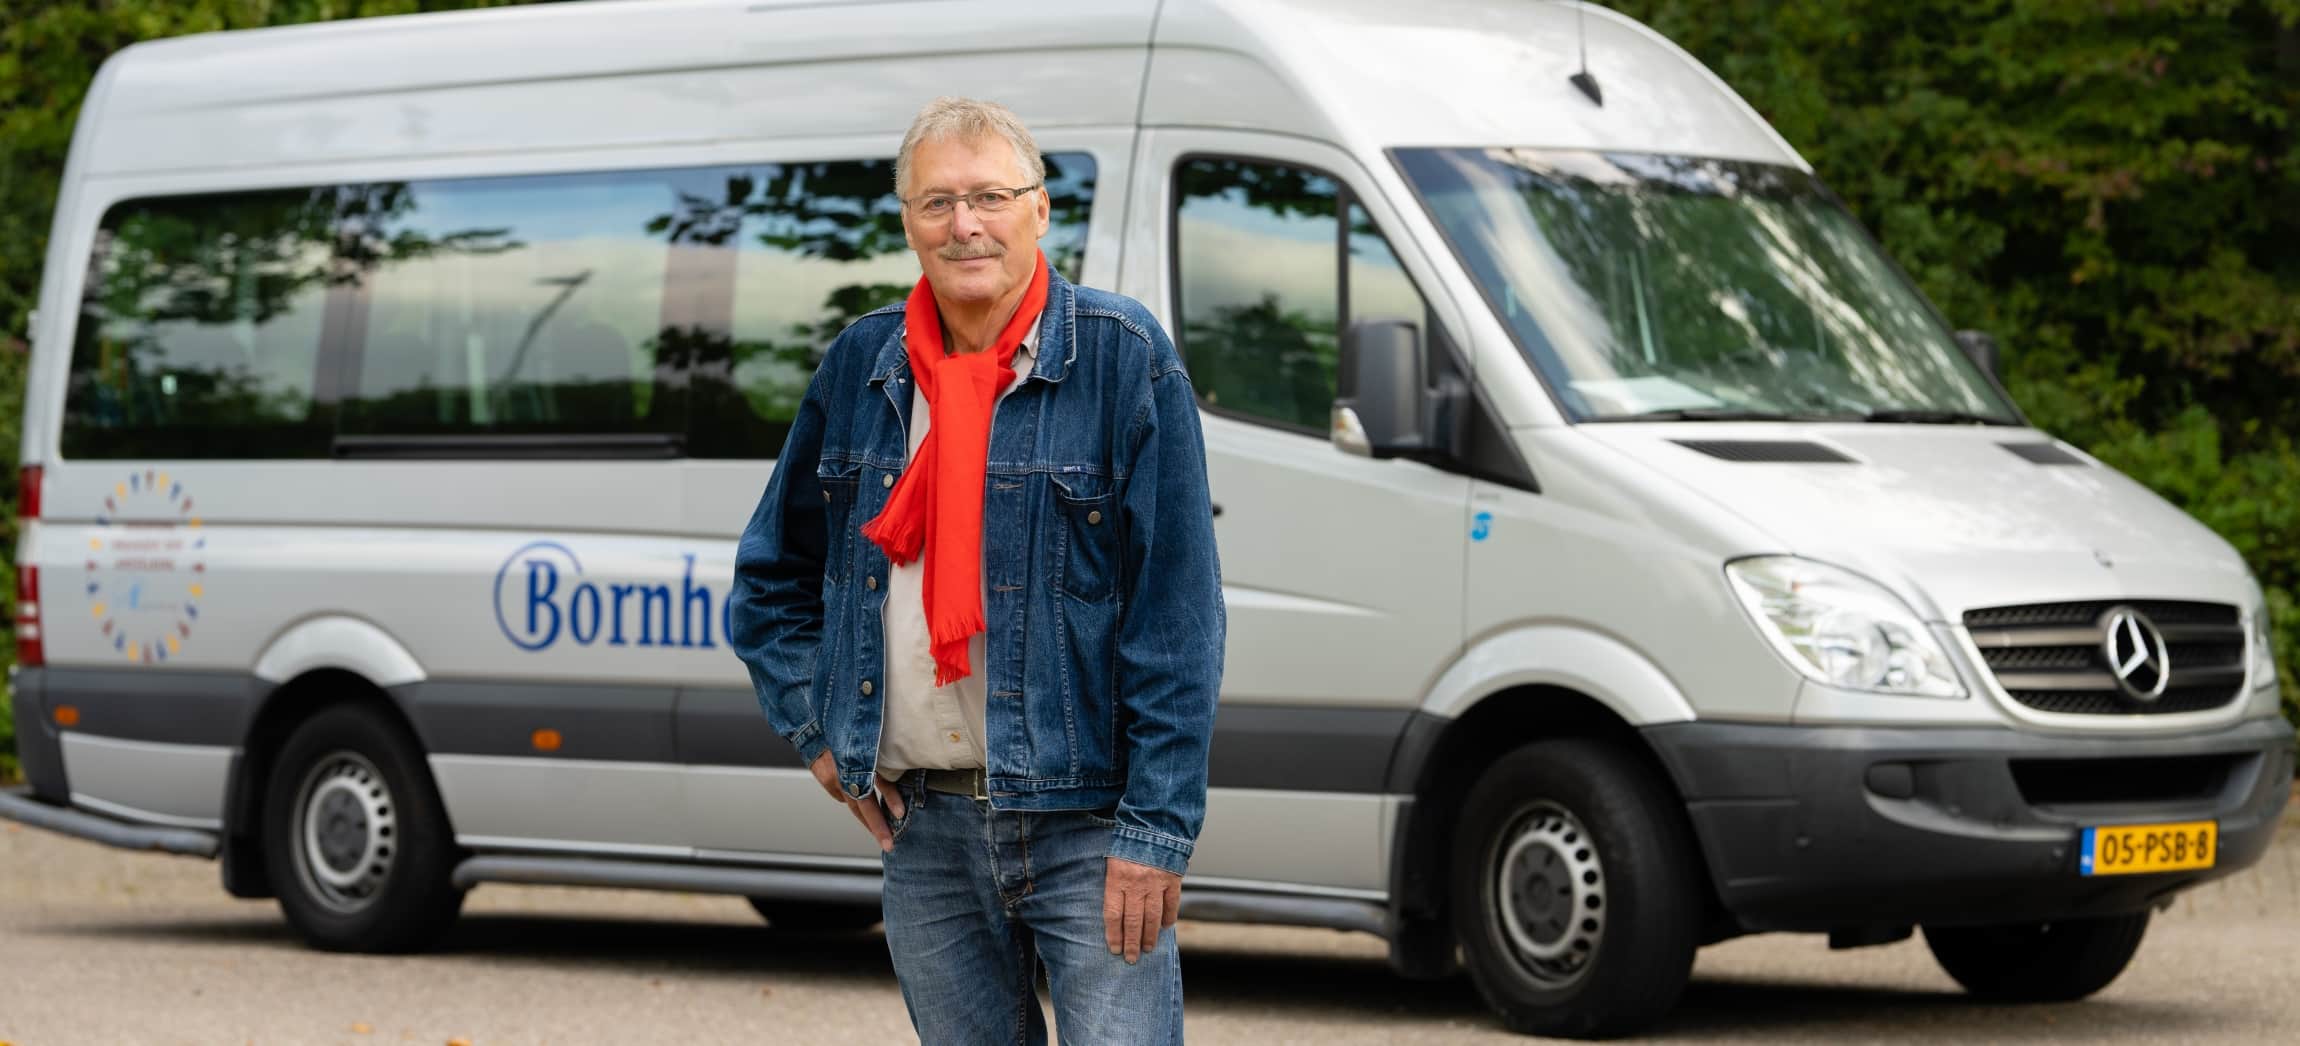 Als vrijwilliger rijdt Piet Koster oudere mensen naar uitjes, vanuit verpleeghuis Bornholm in Hoofddorp.